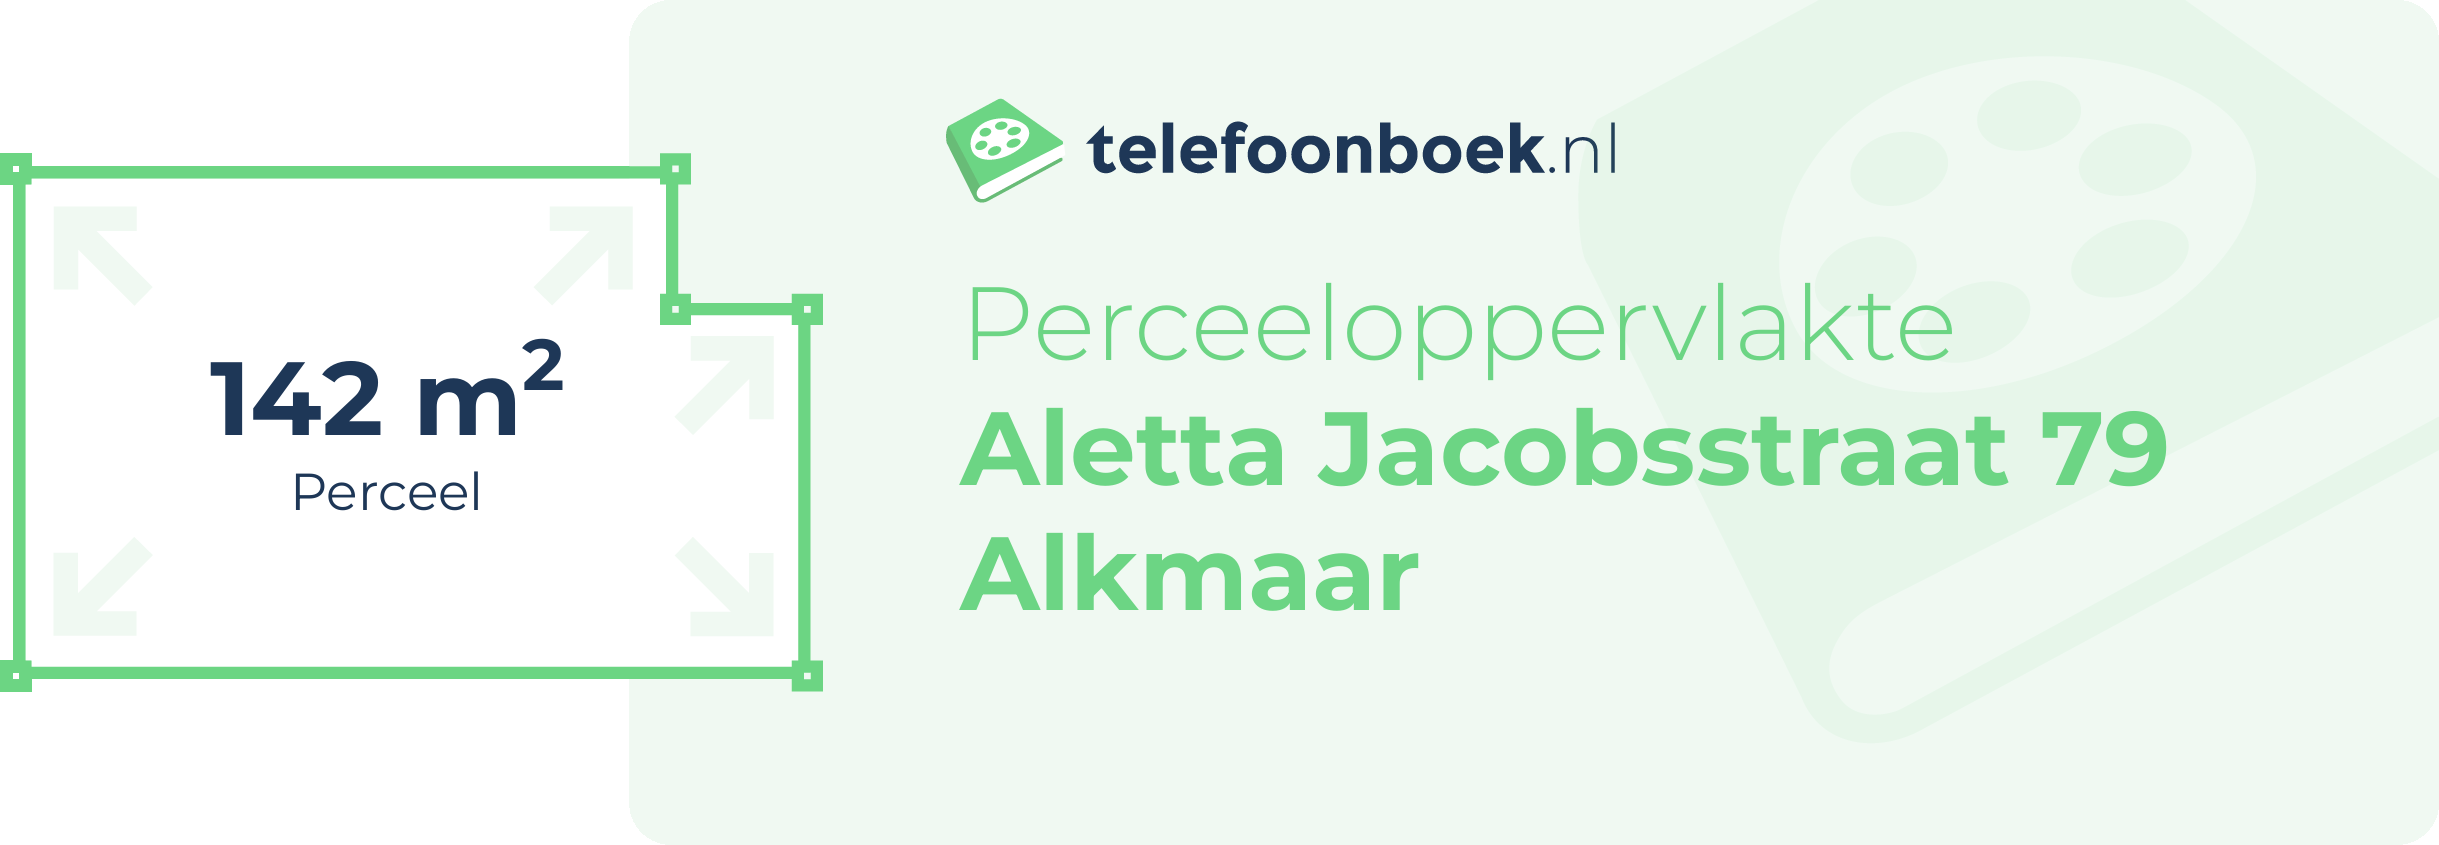 Perceeloppervlakte Aletta Jacobsstraat 79 Alkmaar